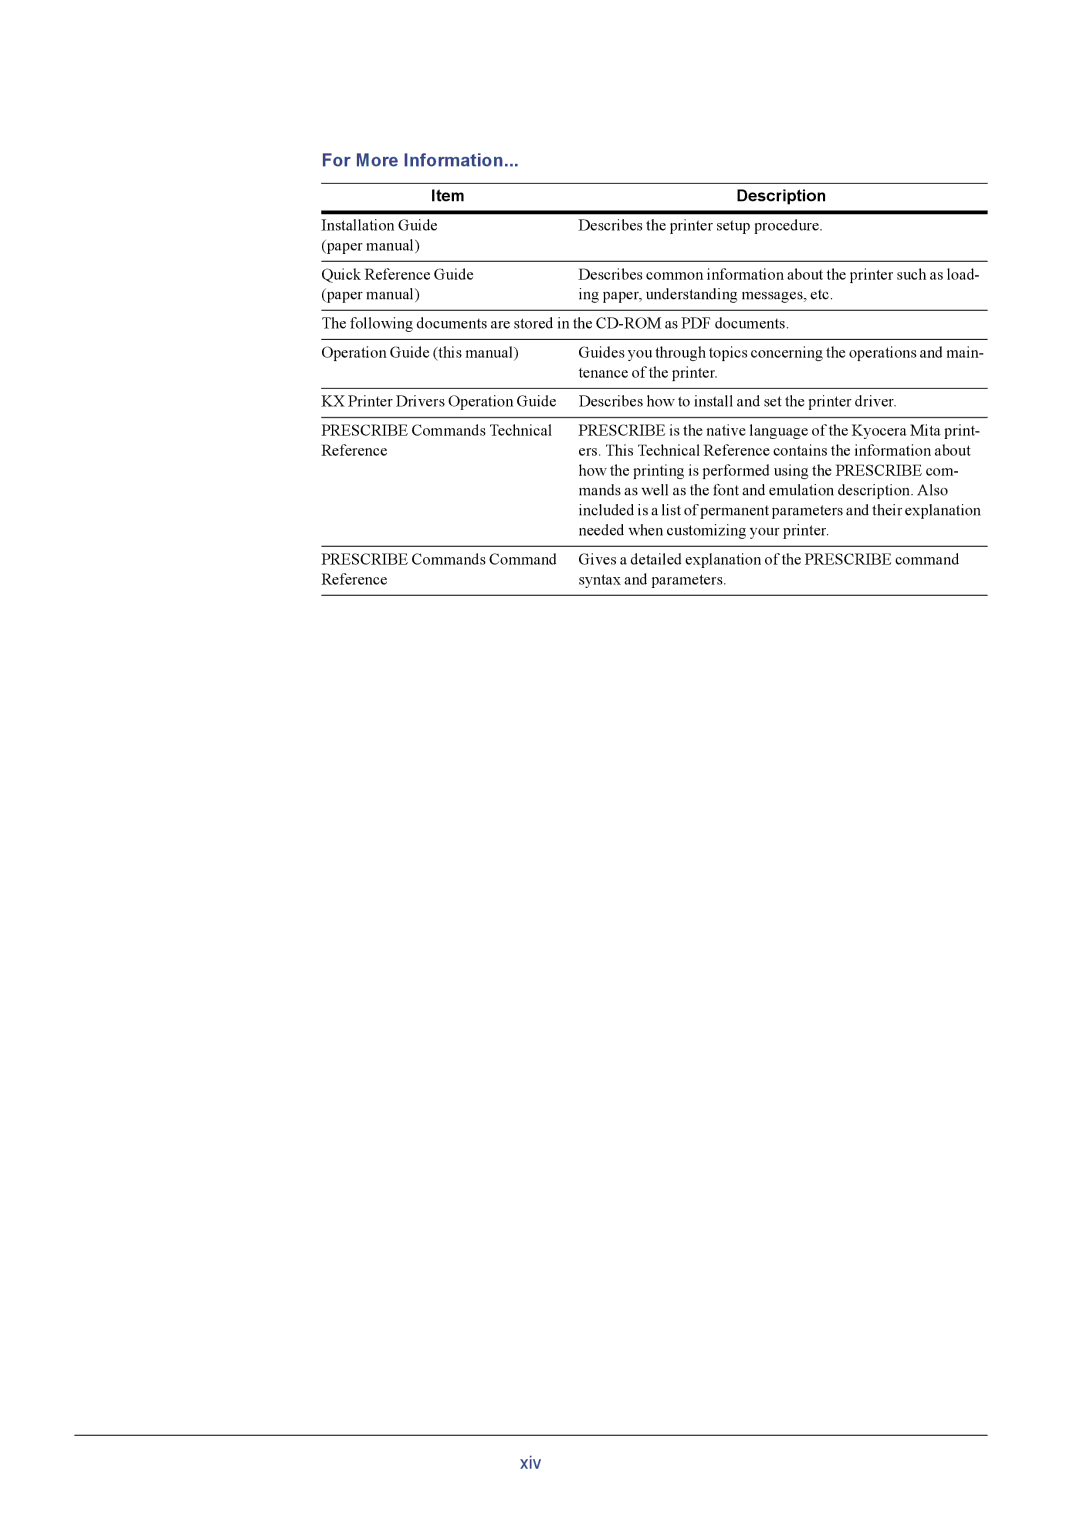 Kyocera FS-C8026N manual For More Information, Description 